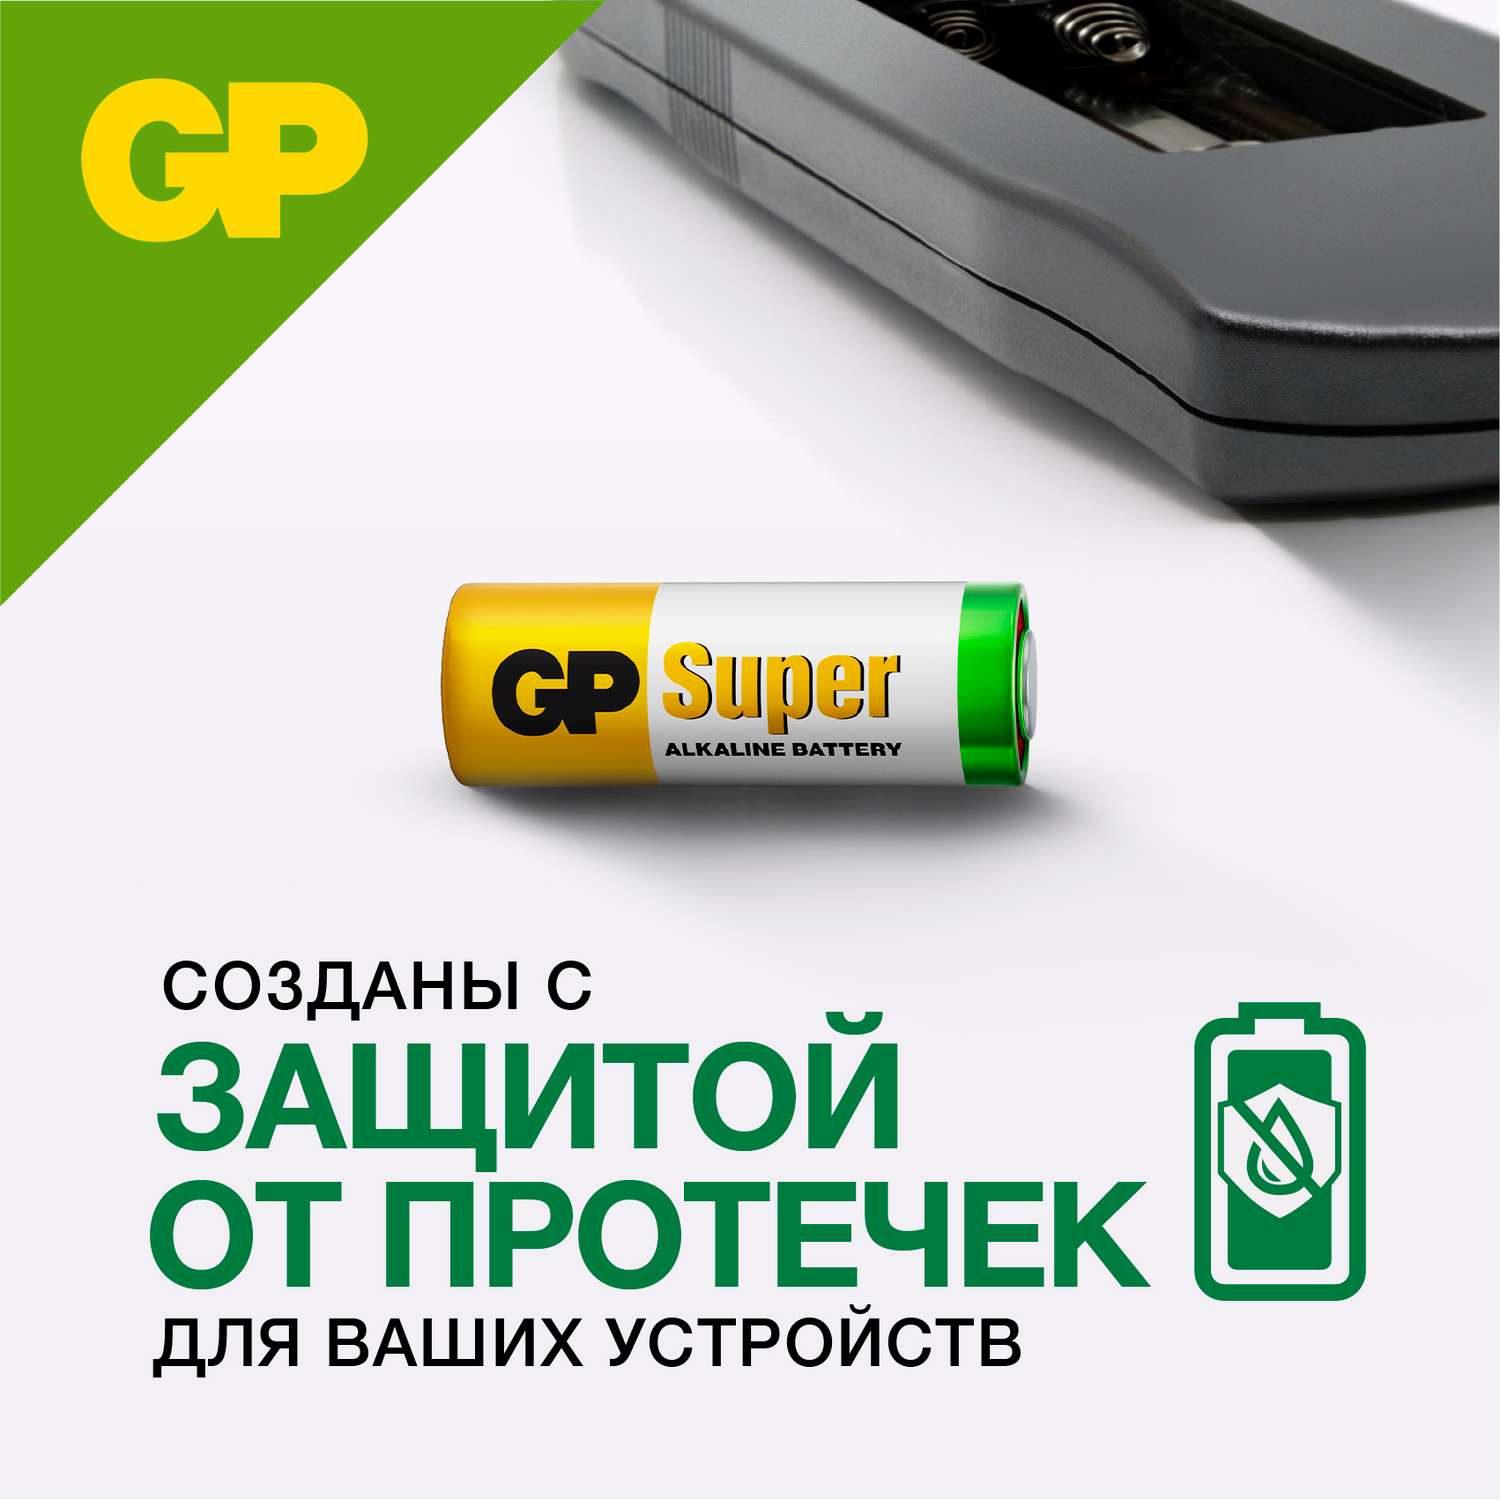 Набор алкалиновых батареек GP типоразмера 27A 5 штук в упаковке - фото 6